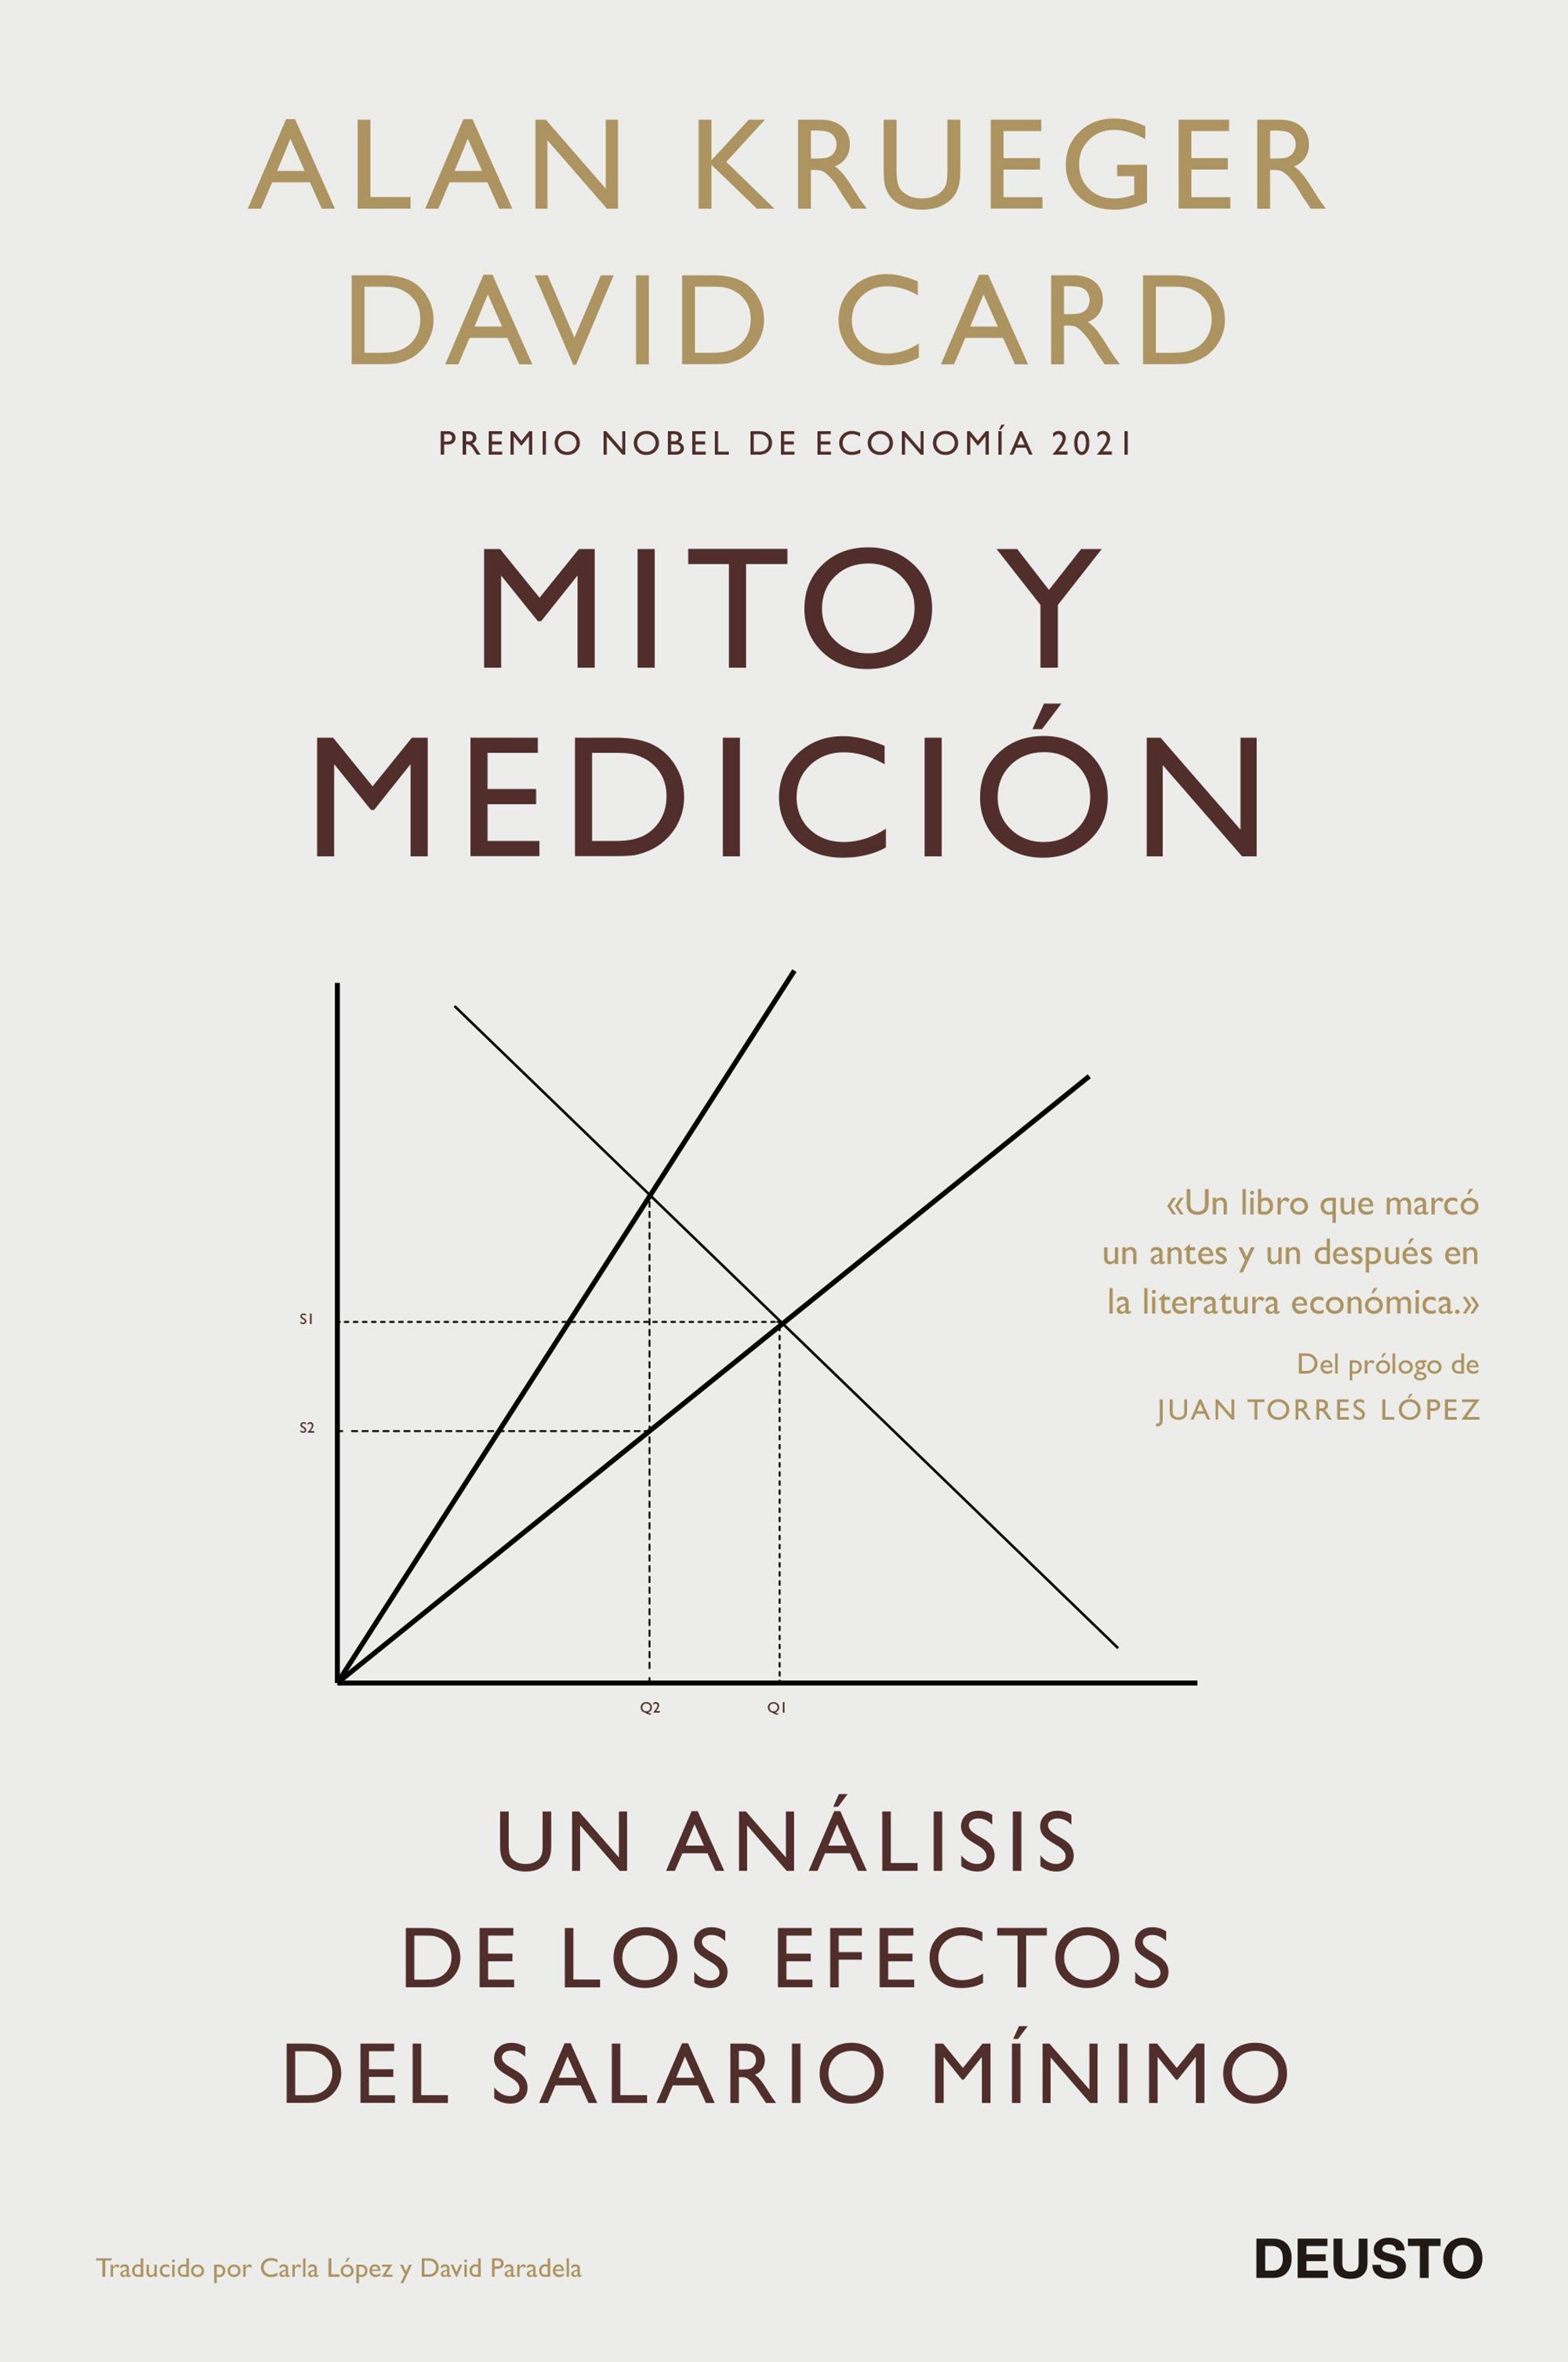 Mito y medición "Un análisis de los efectos del salario mínimo"